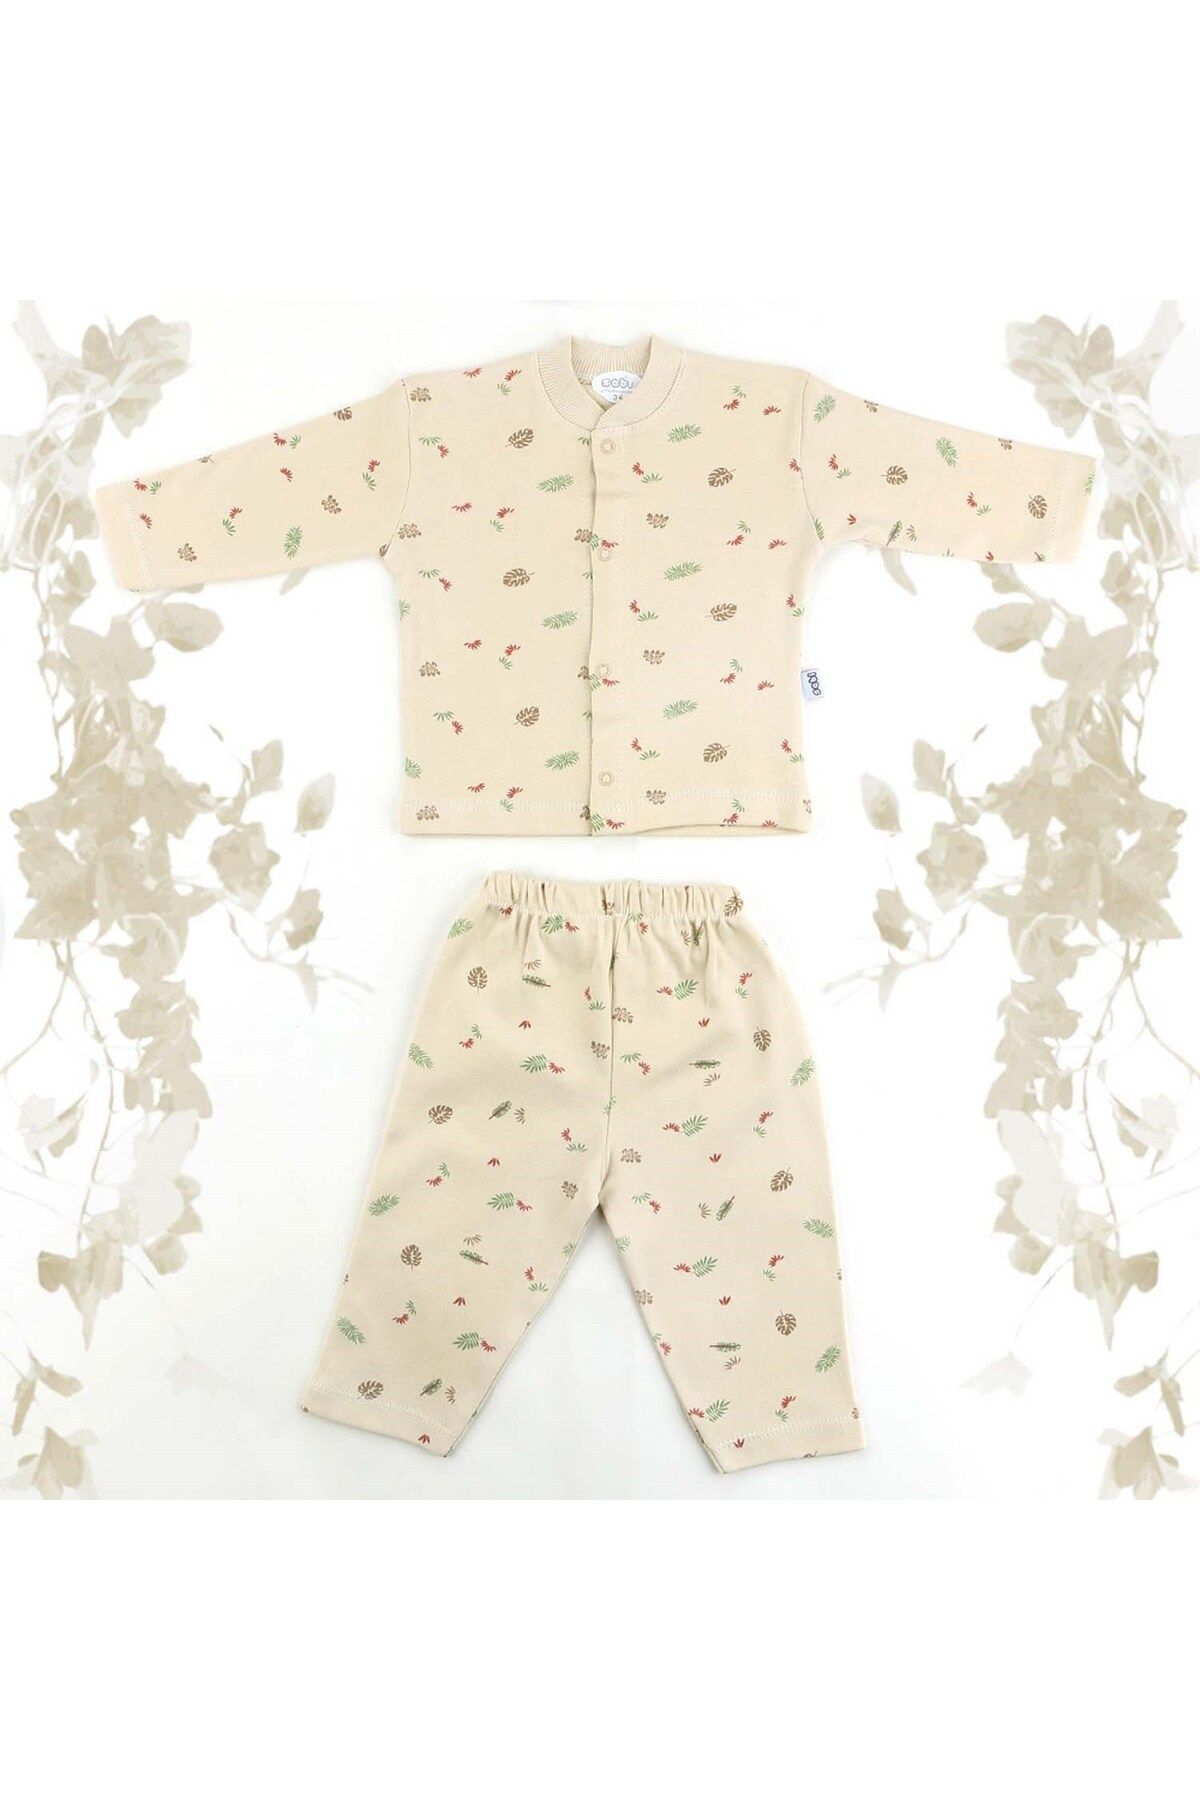 Sebi Bebe Yapraklı Pijama Takımı 9106